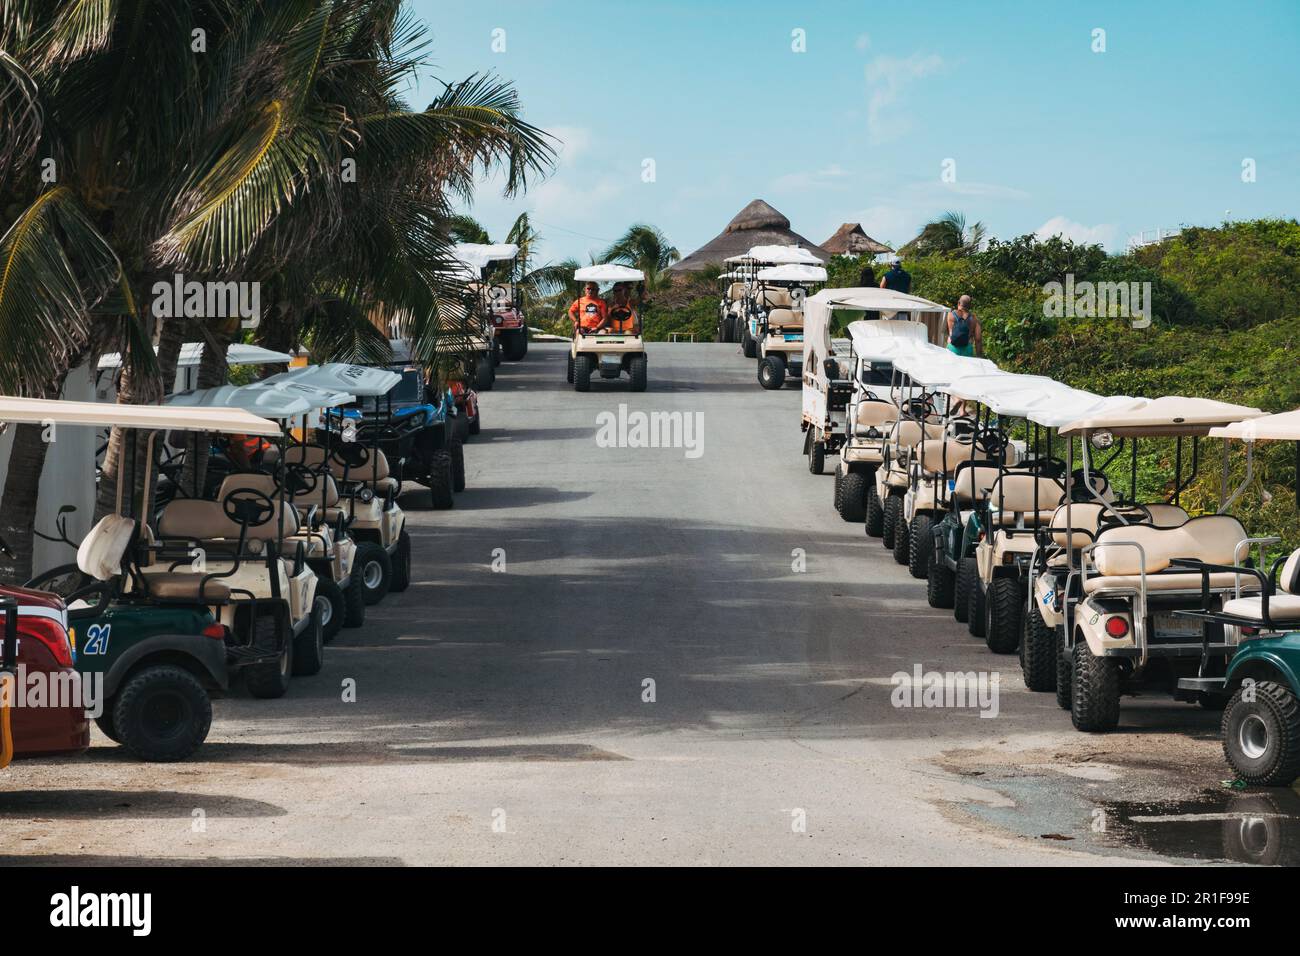 Golfwagen säumen die Straßen von Isla Mujeres, Yucatan, Mexiko. Die Buggys sind eine beliebte Art, die Insel zu erkunden Stockfoto